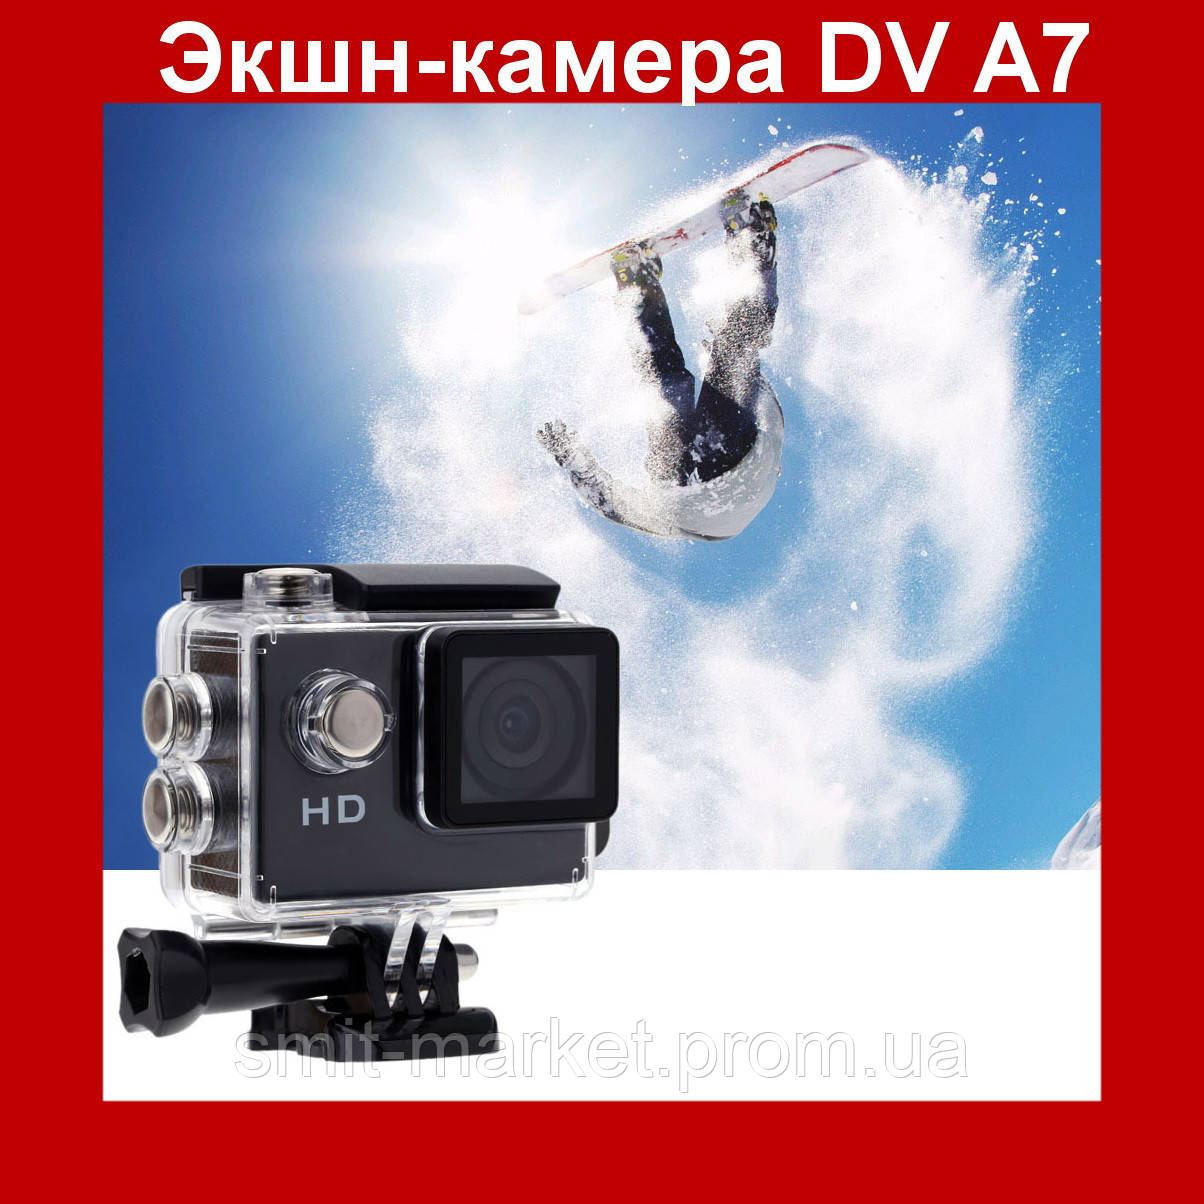 Спортивная экшн камера DV A7